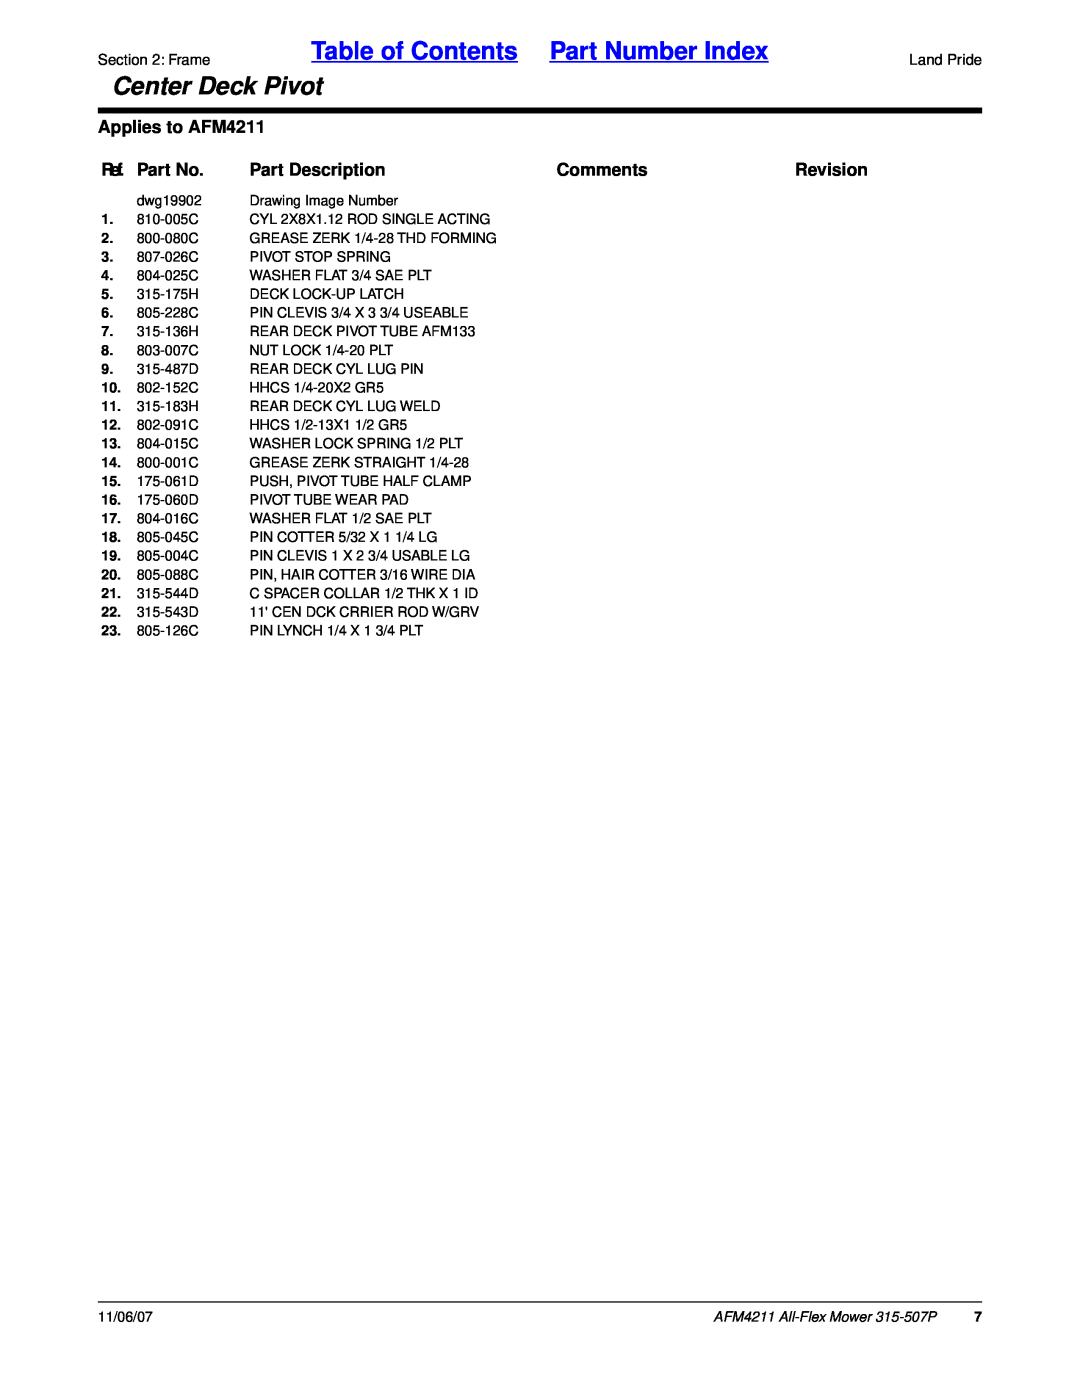 Land Pride AFM4211, All-Flex Mower Ref. Part No, Part Description, Comments, Revision, Table of Contents Part Number Index 